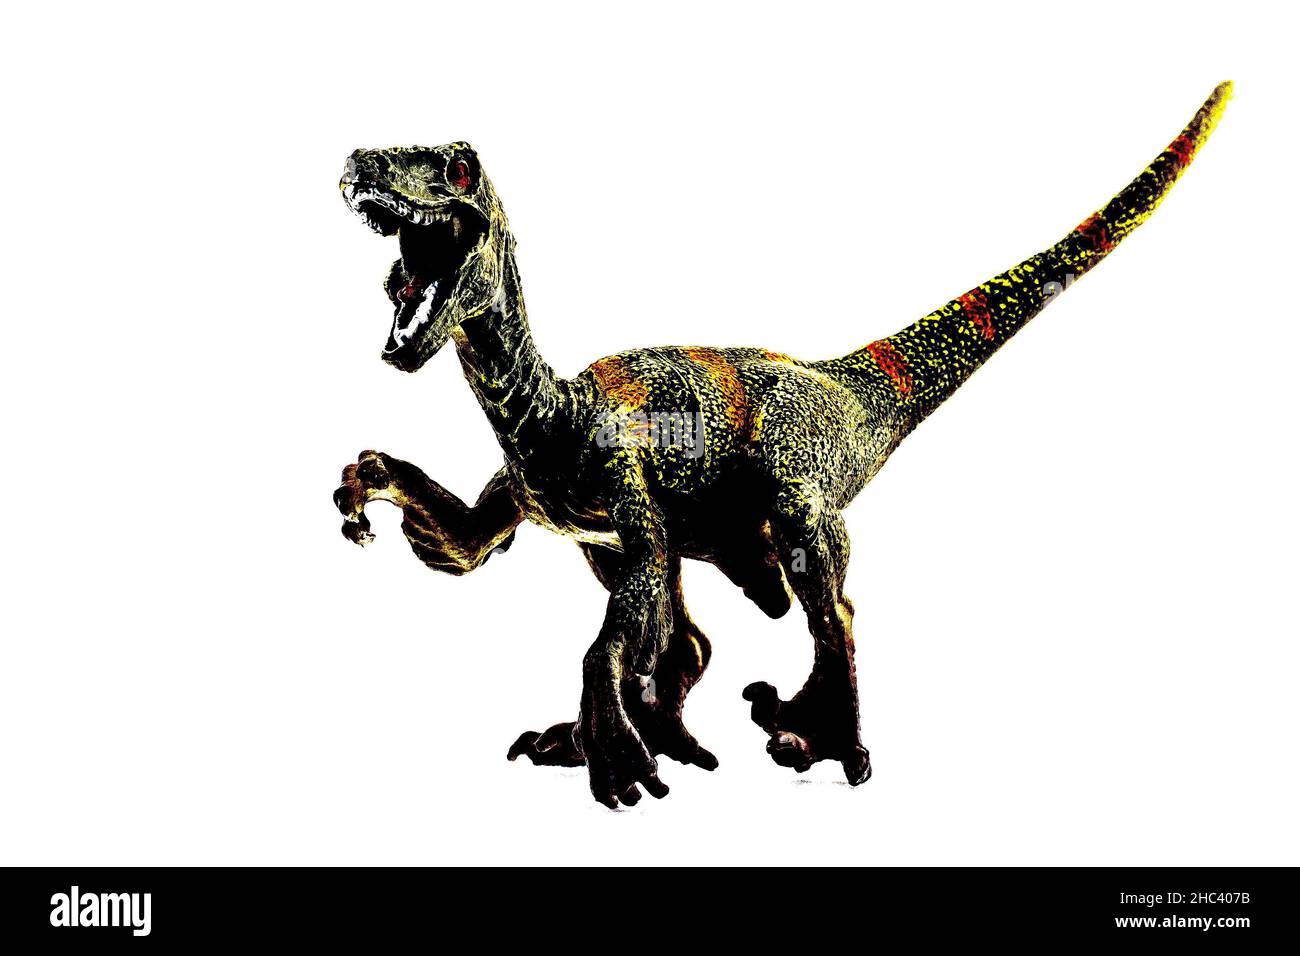 immagine stilizzata di un dinosauro giocattolo Foto Stock